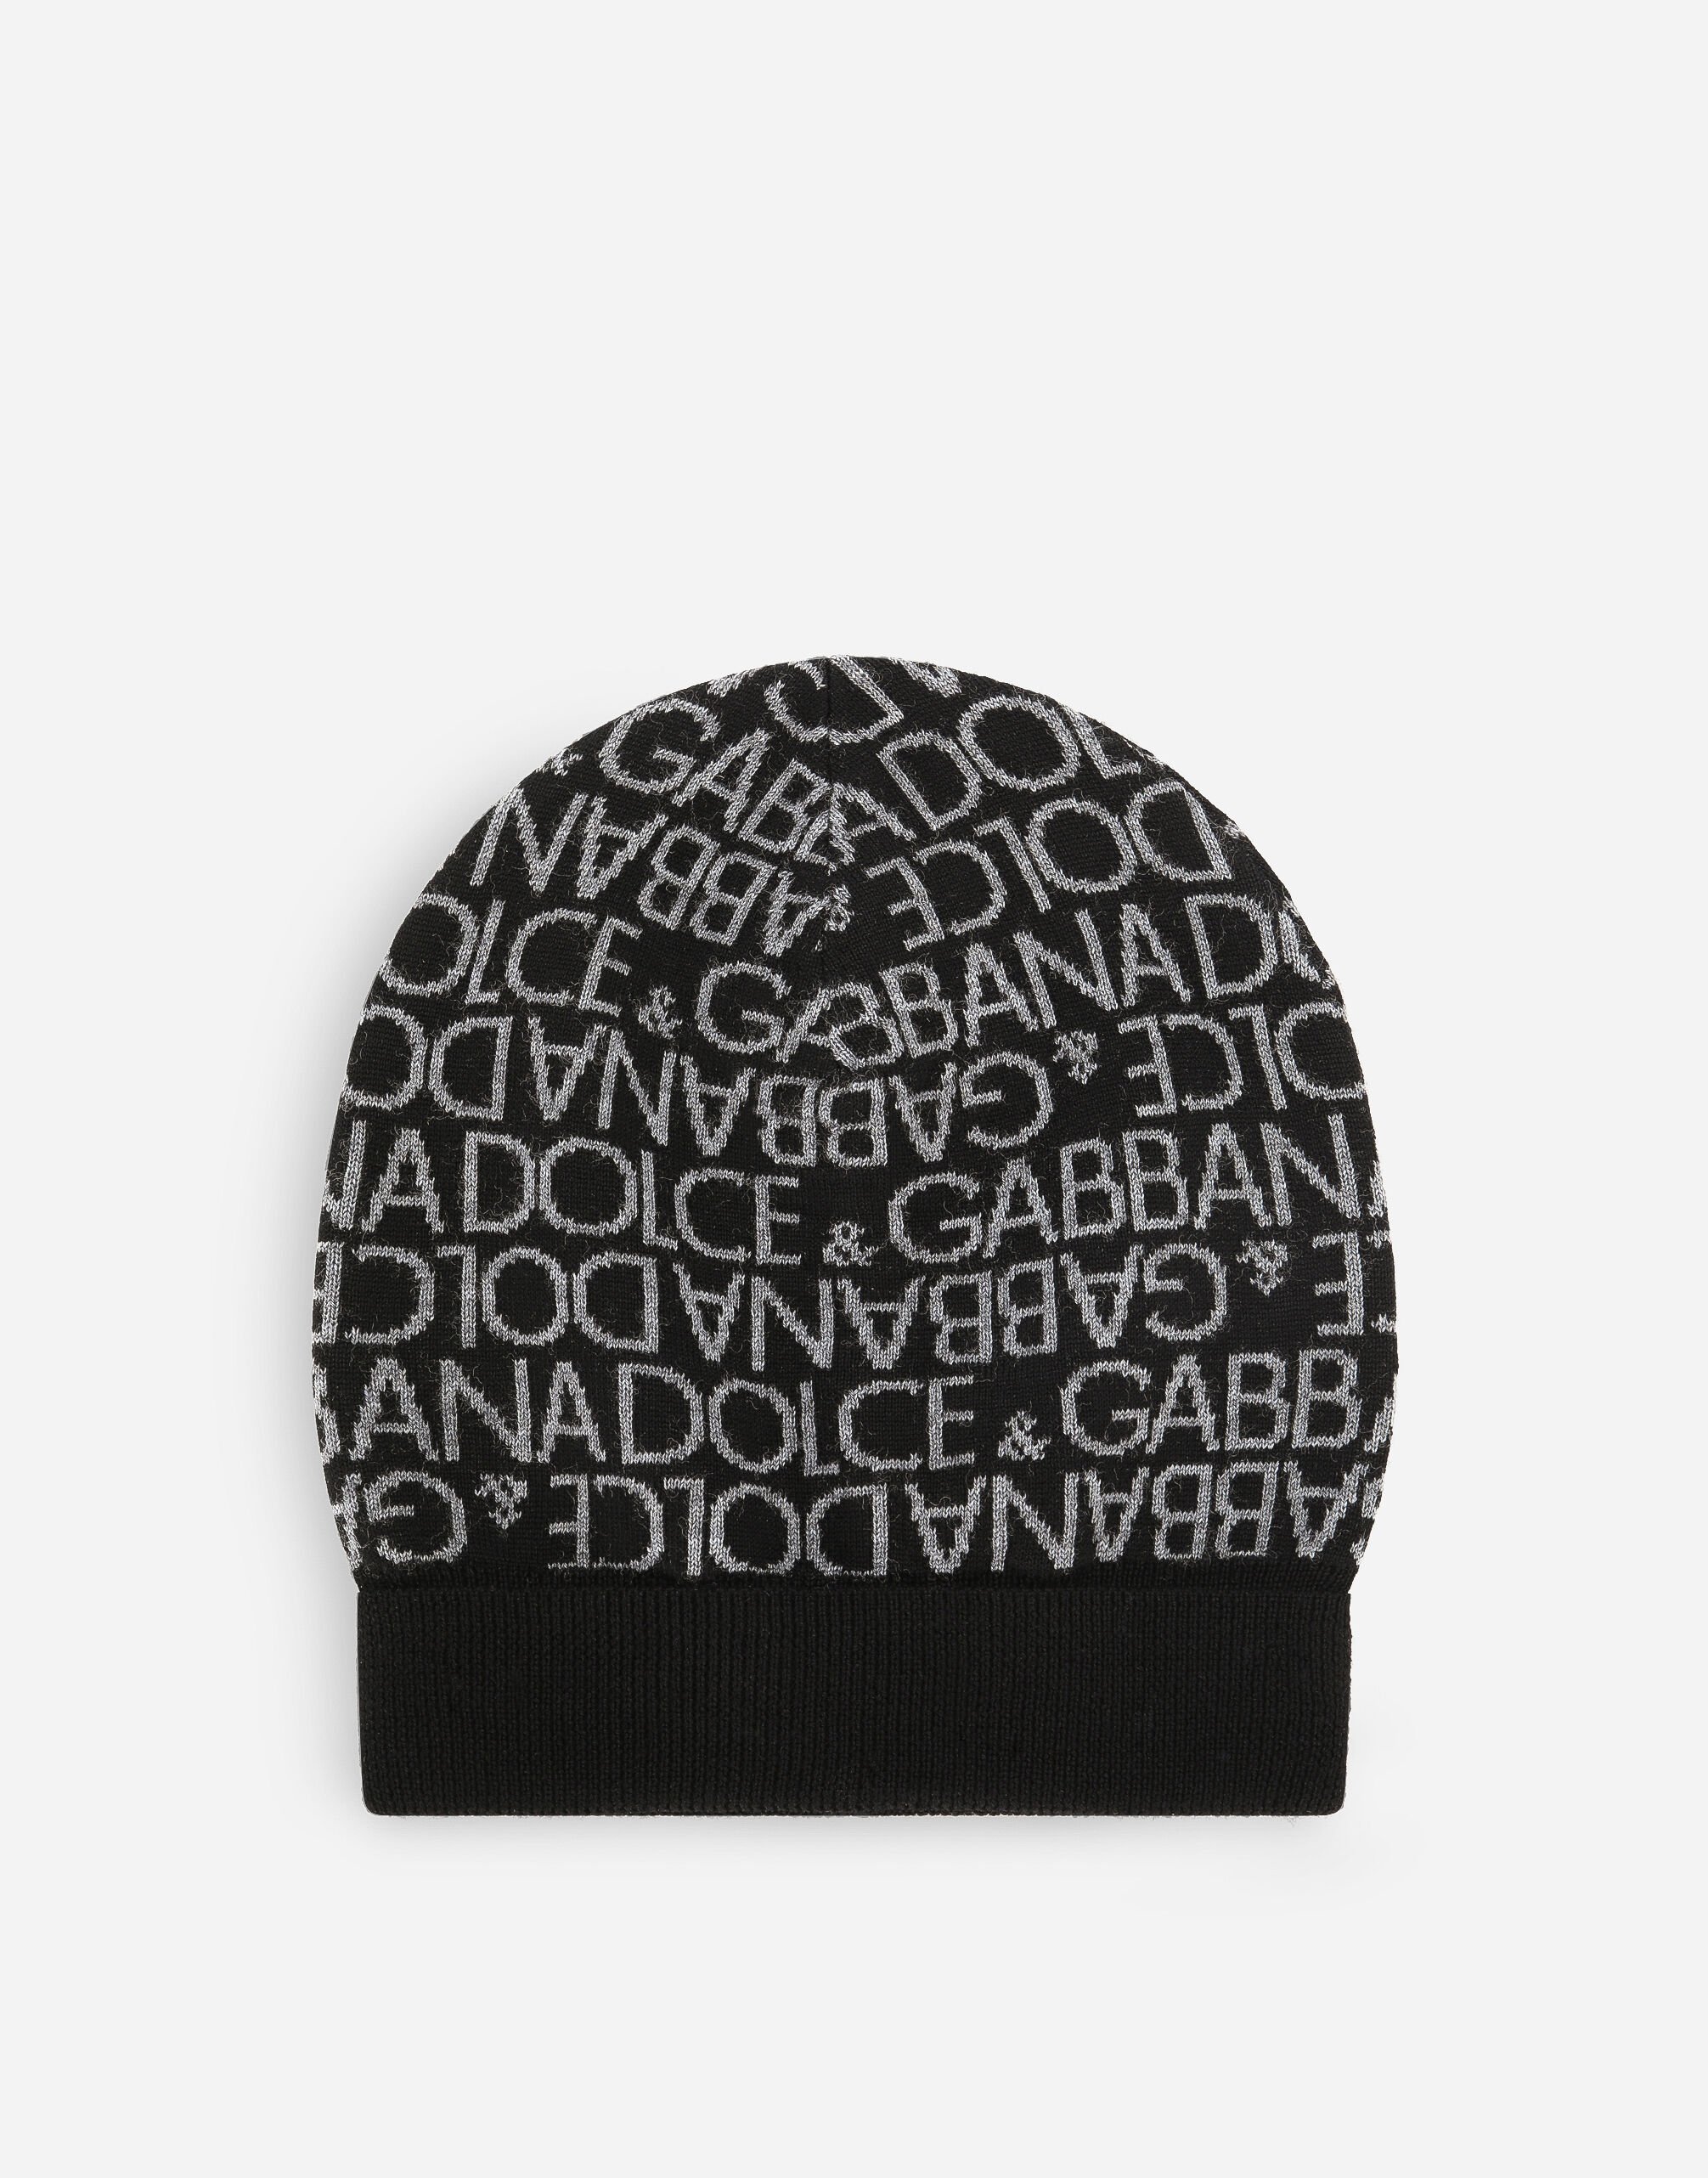 Dolce & Gabbana Jacquard knit hat Black EM0125AB205